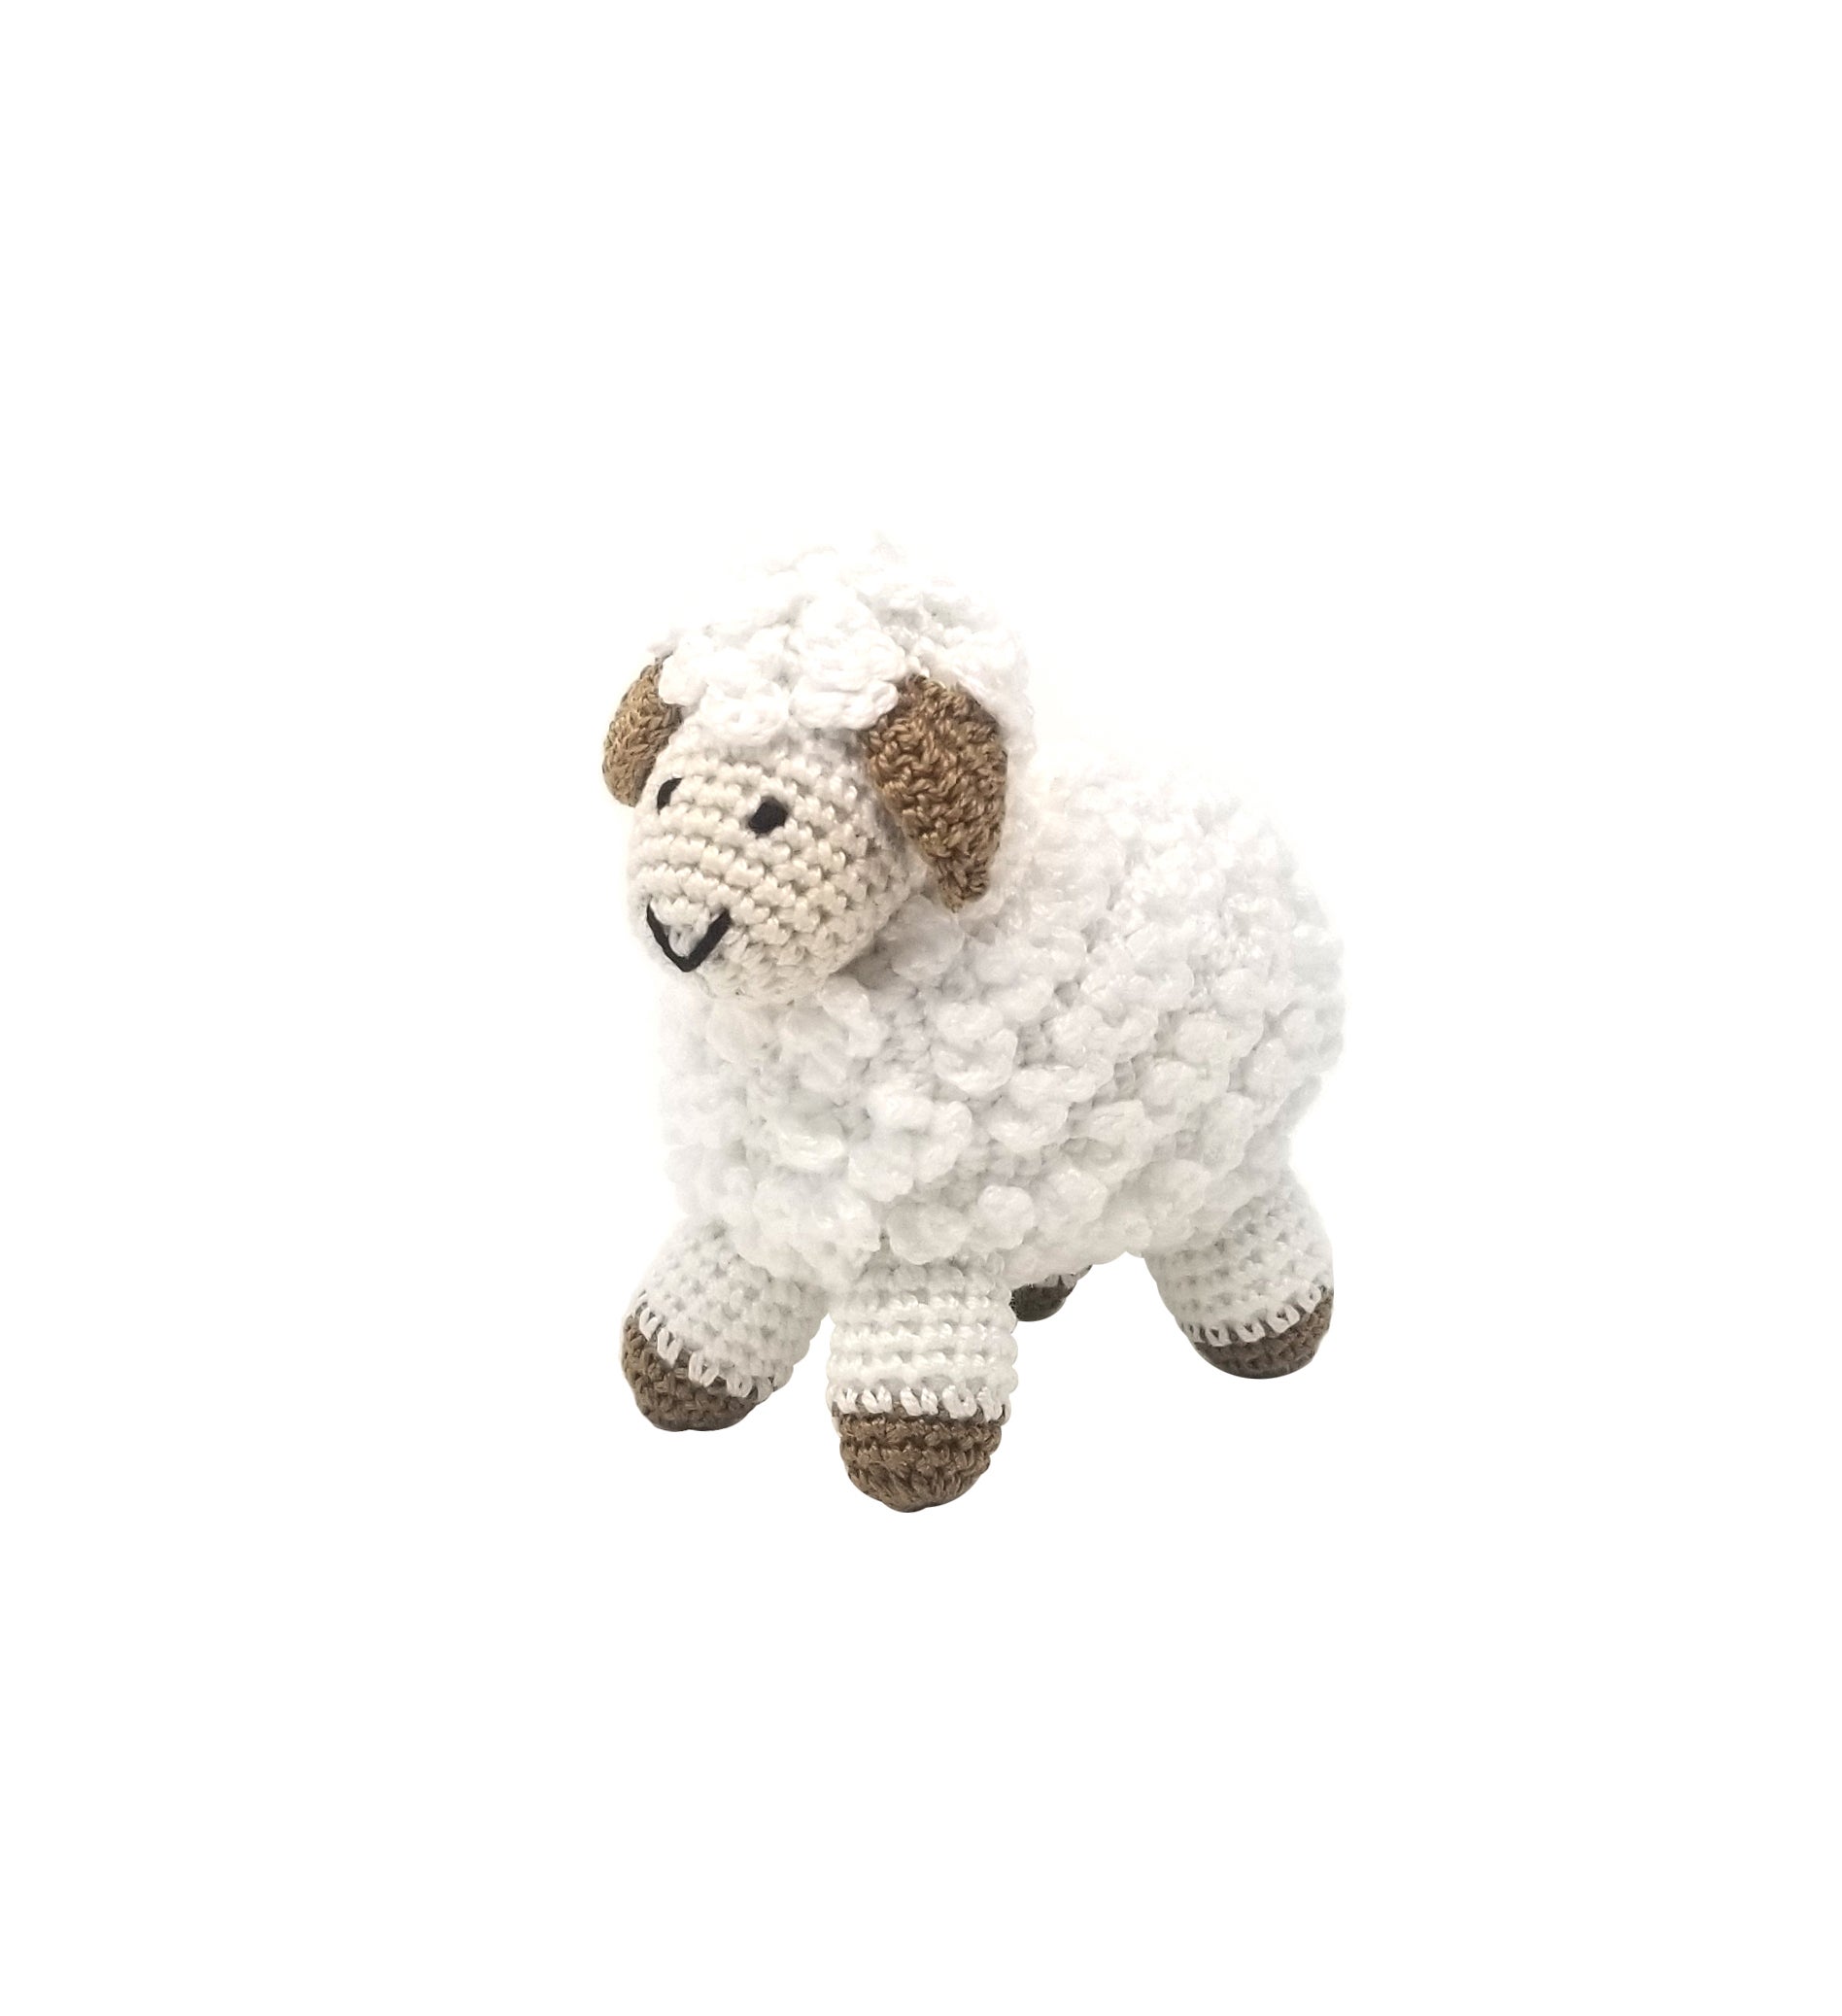 Little Crochet Sheep